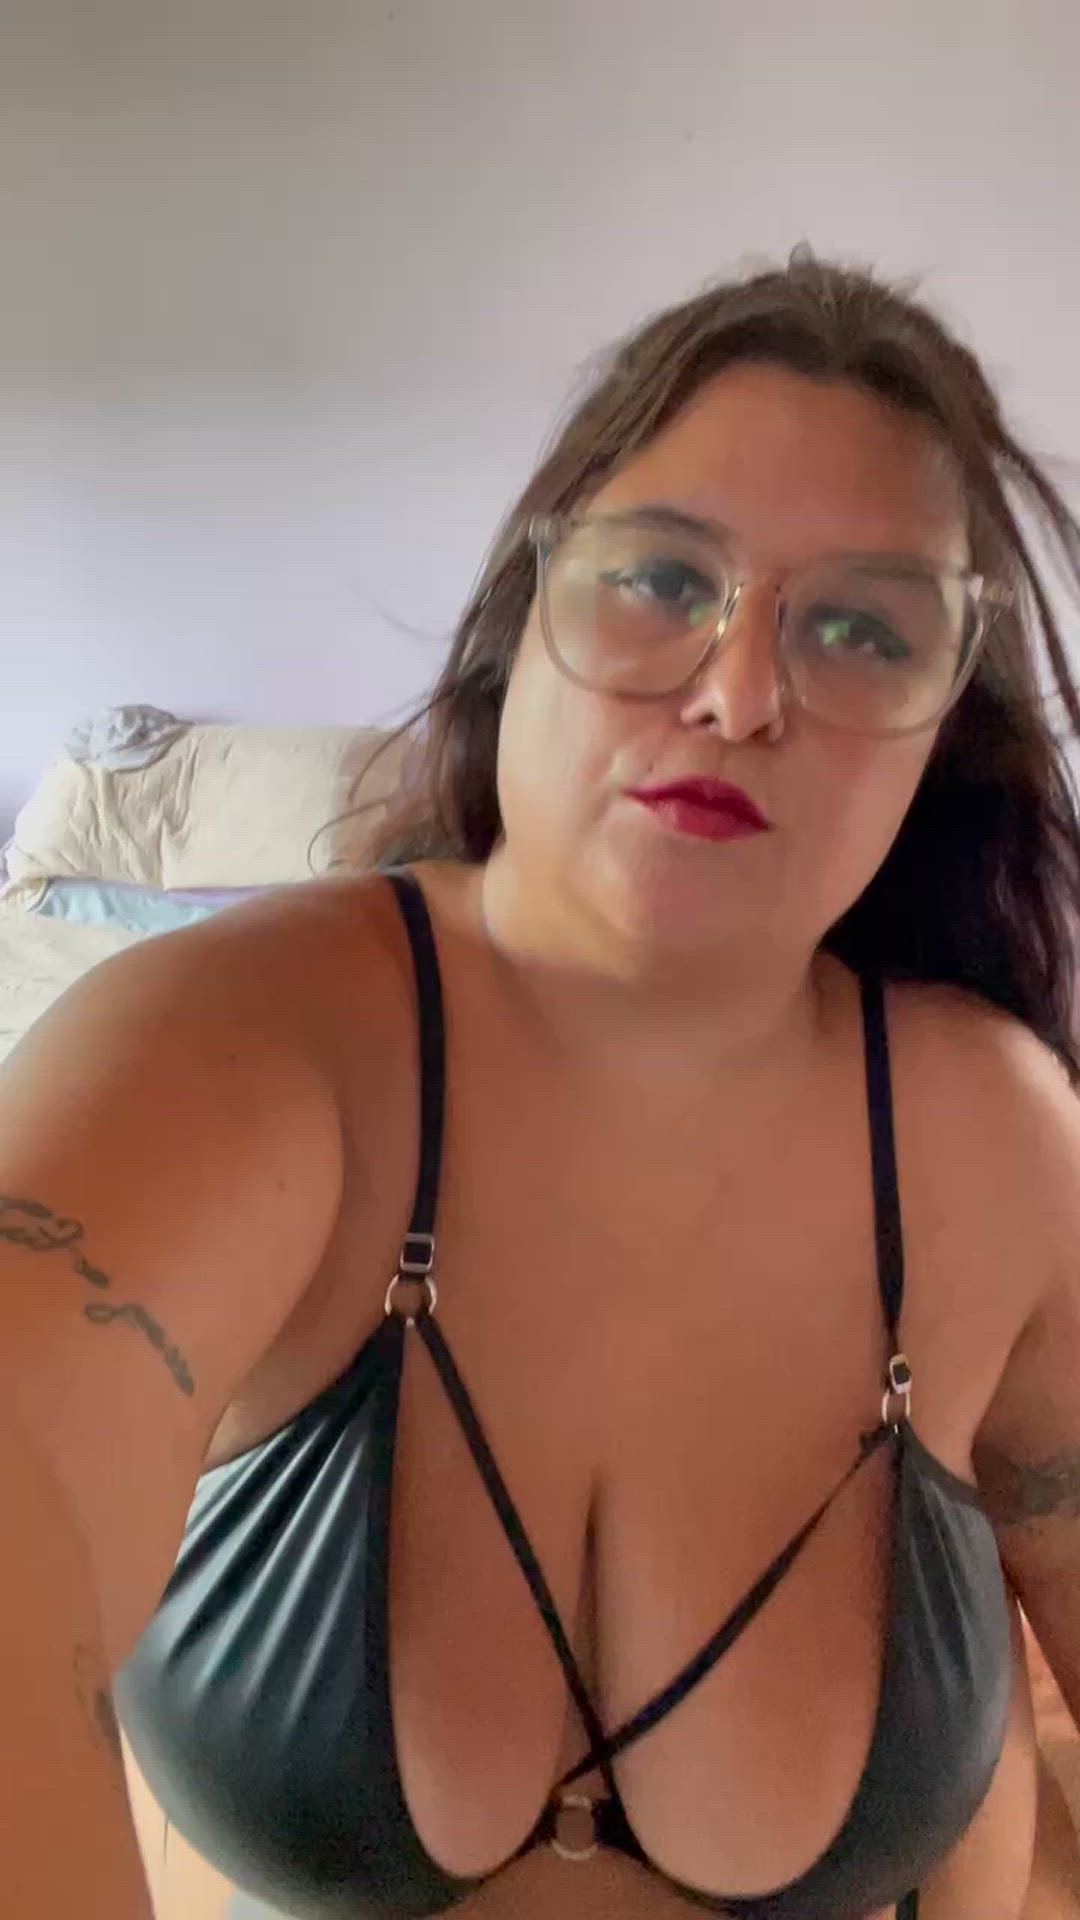 Ass porn video with onlyfans model queenjuliette <strong>@mistressjuliette</strong>